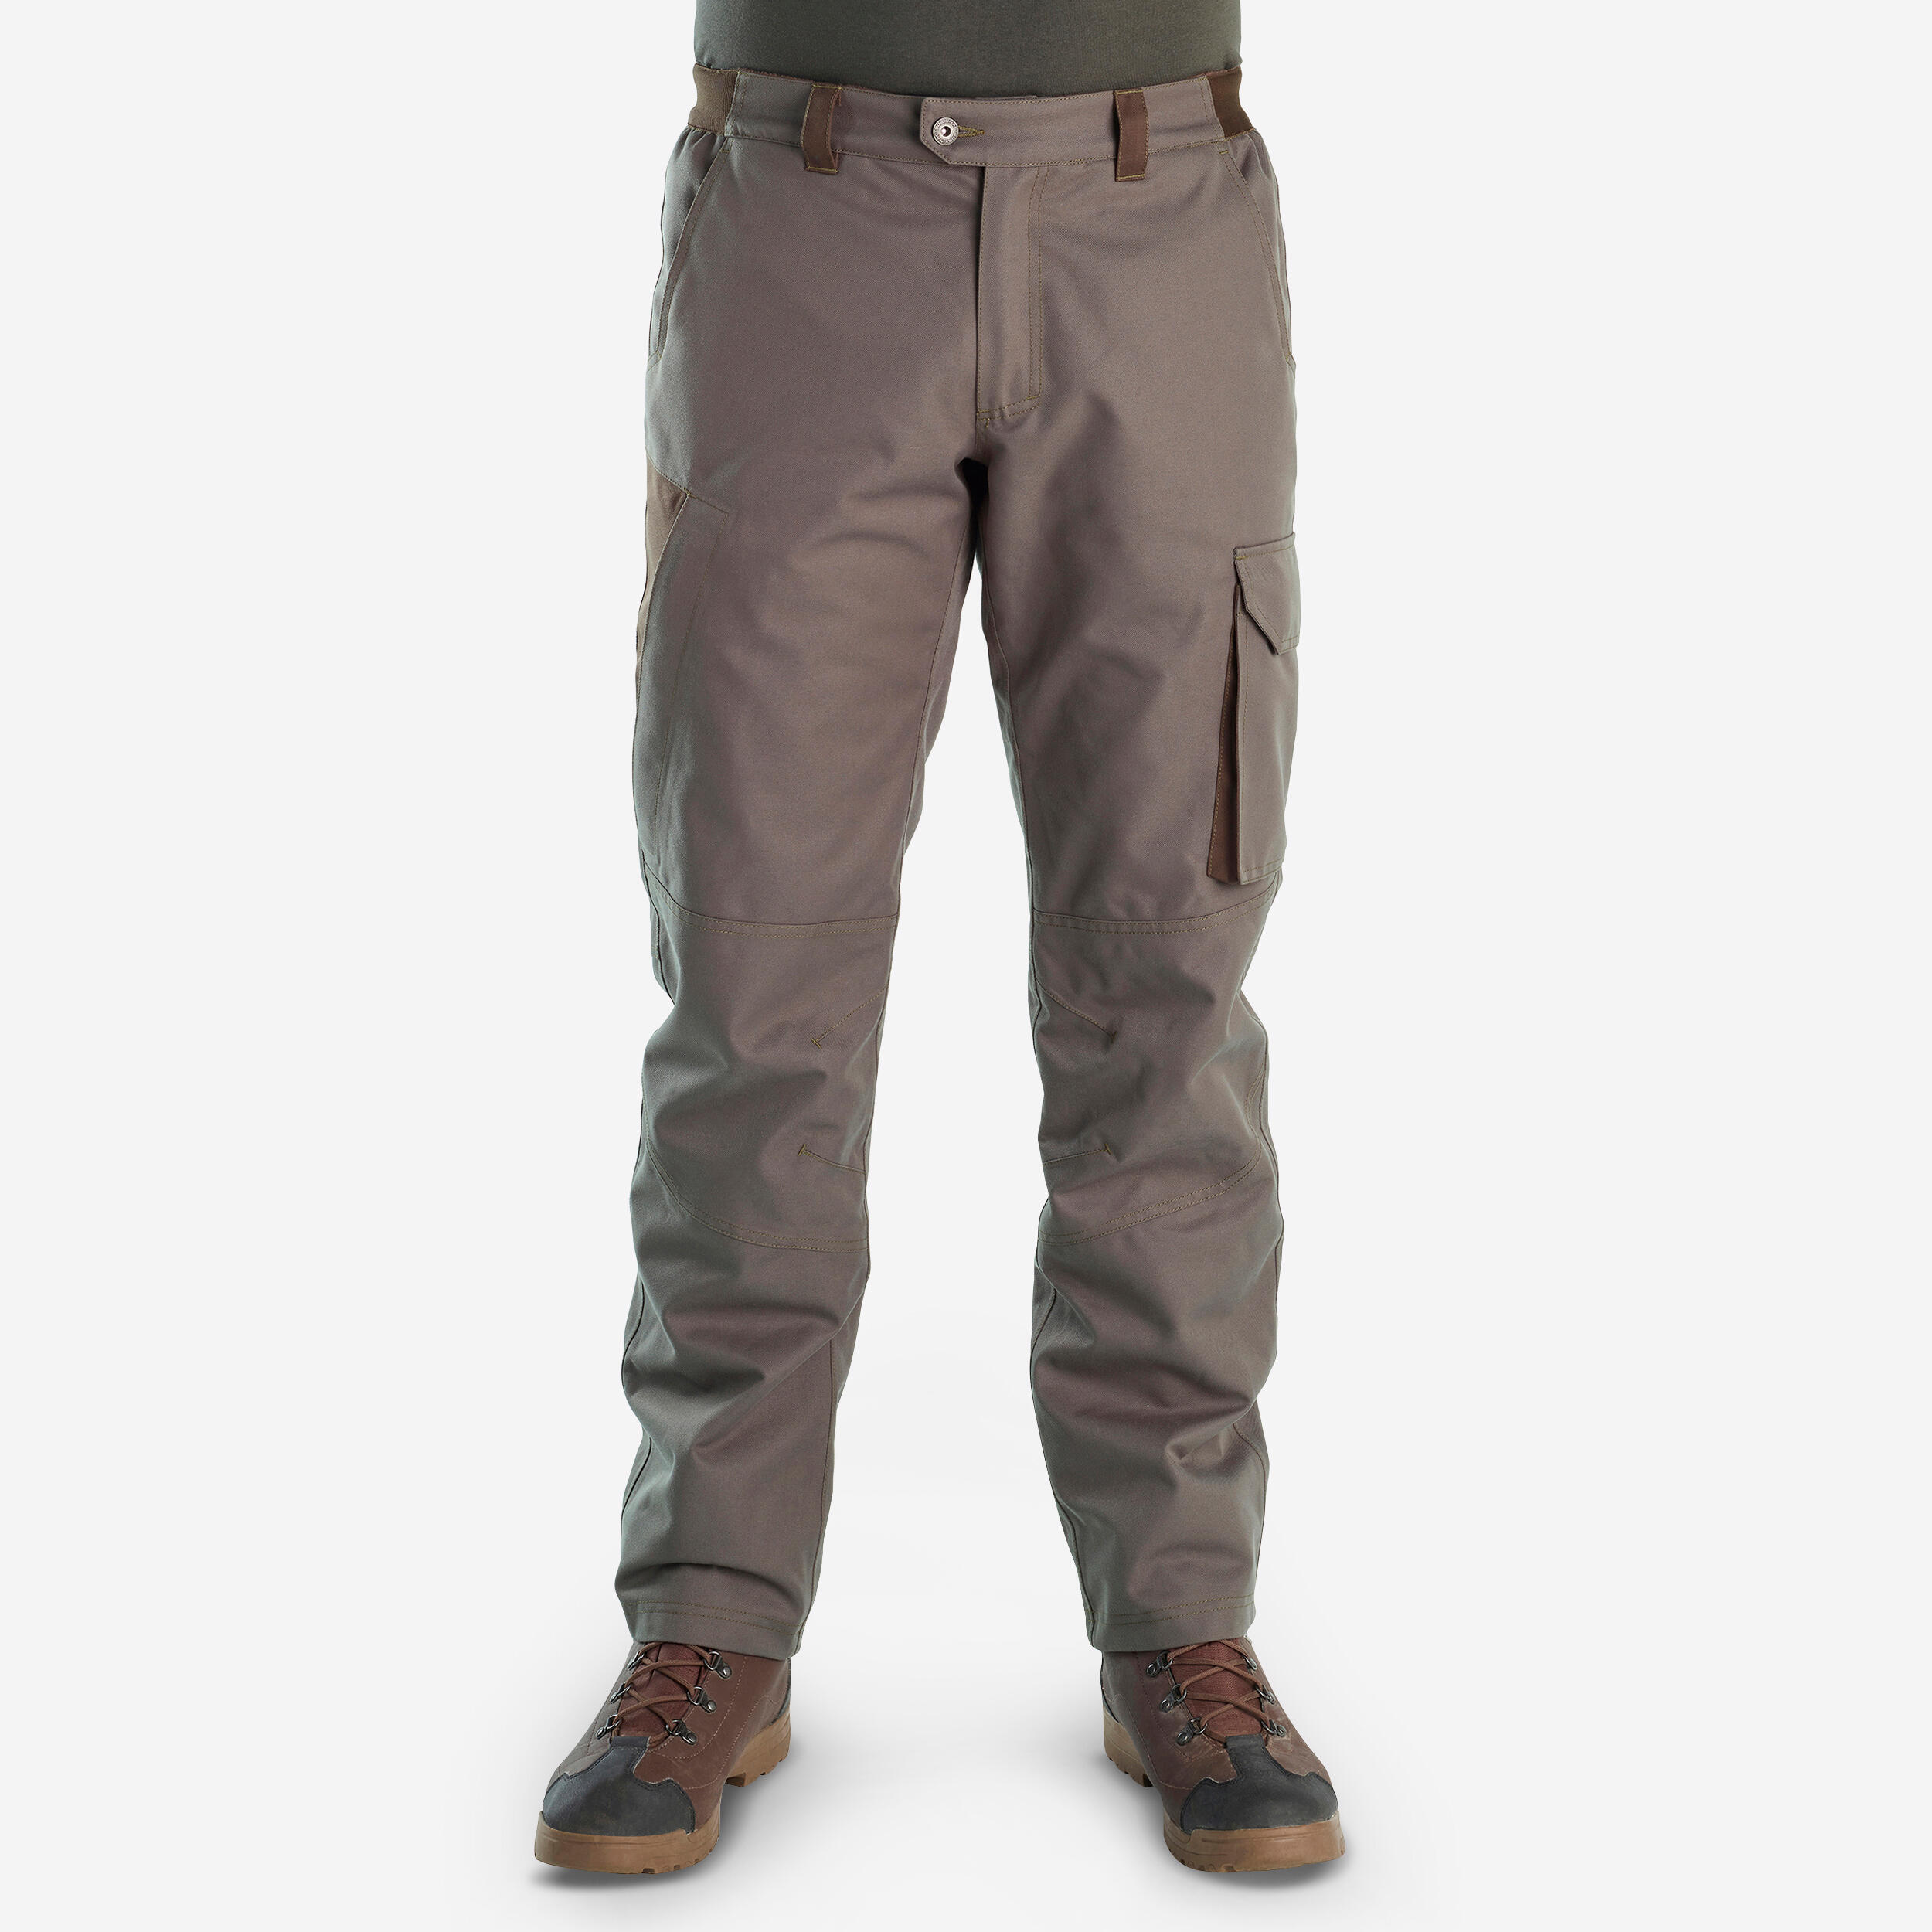 Deerhunter Ram Realtree Camo Waterproof Shooting Trousers  eBay